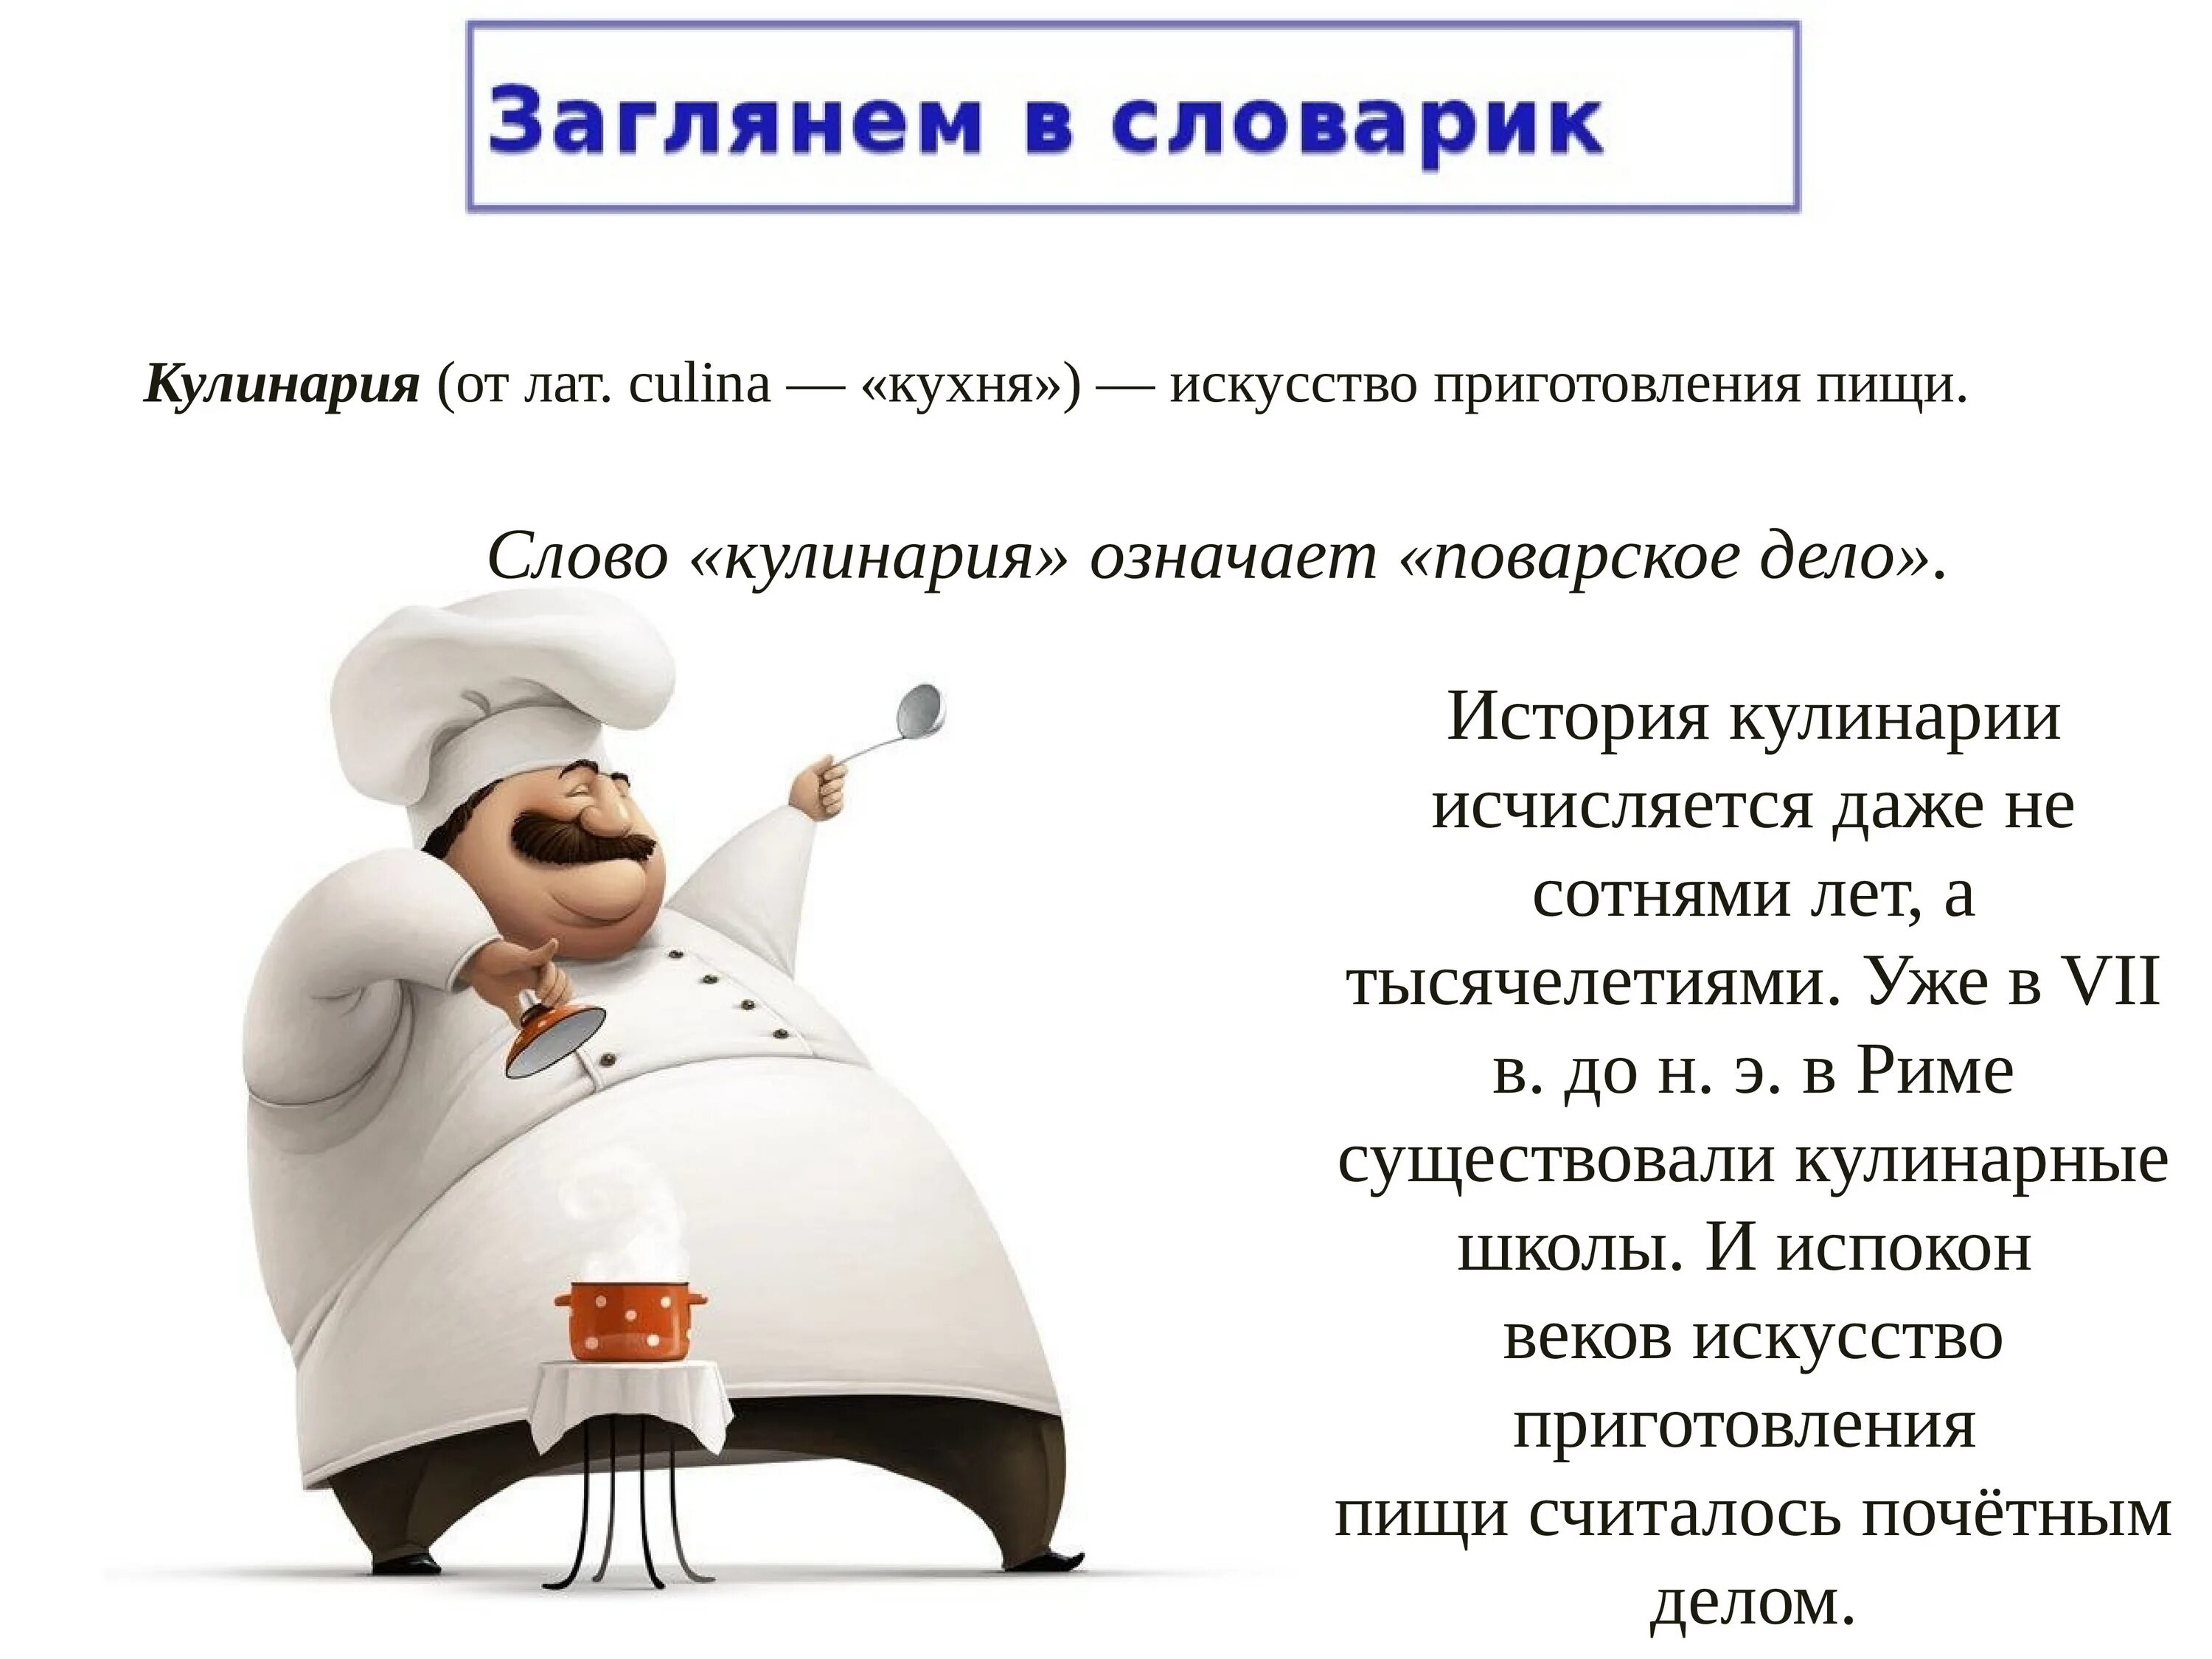 История кулинарии. Презентация на тему кулинария. Доклад на тему кулинария. Факты о кулинарии. Кулинария значит